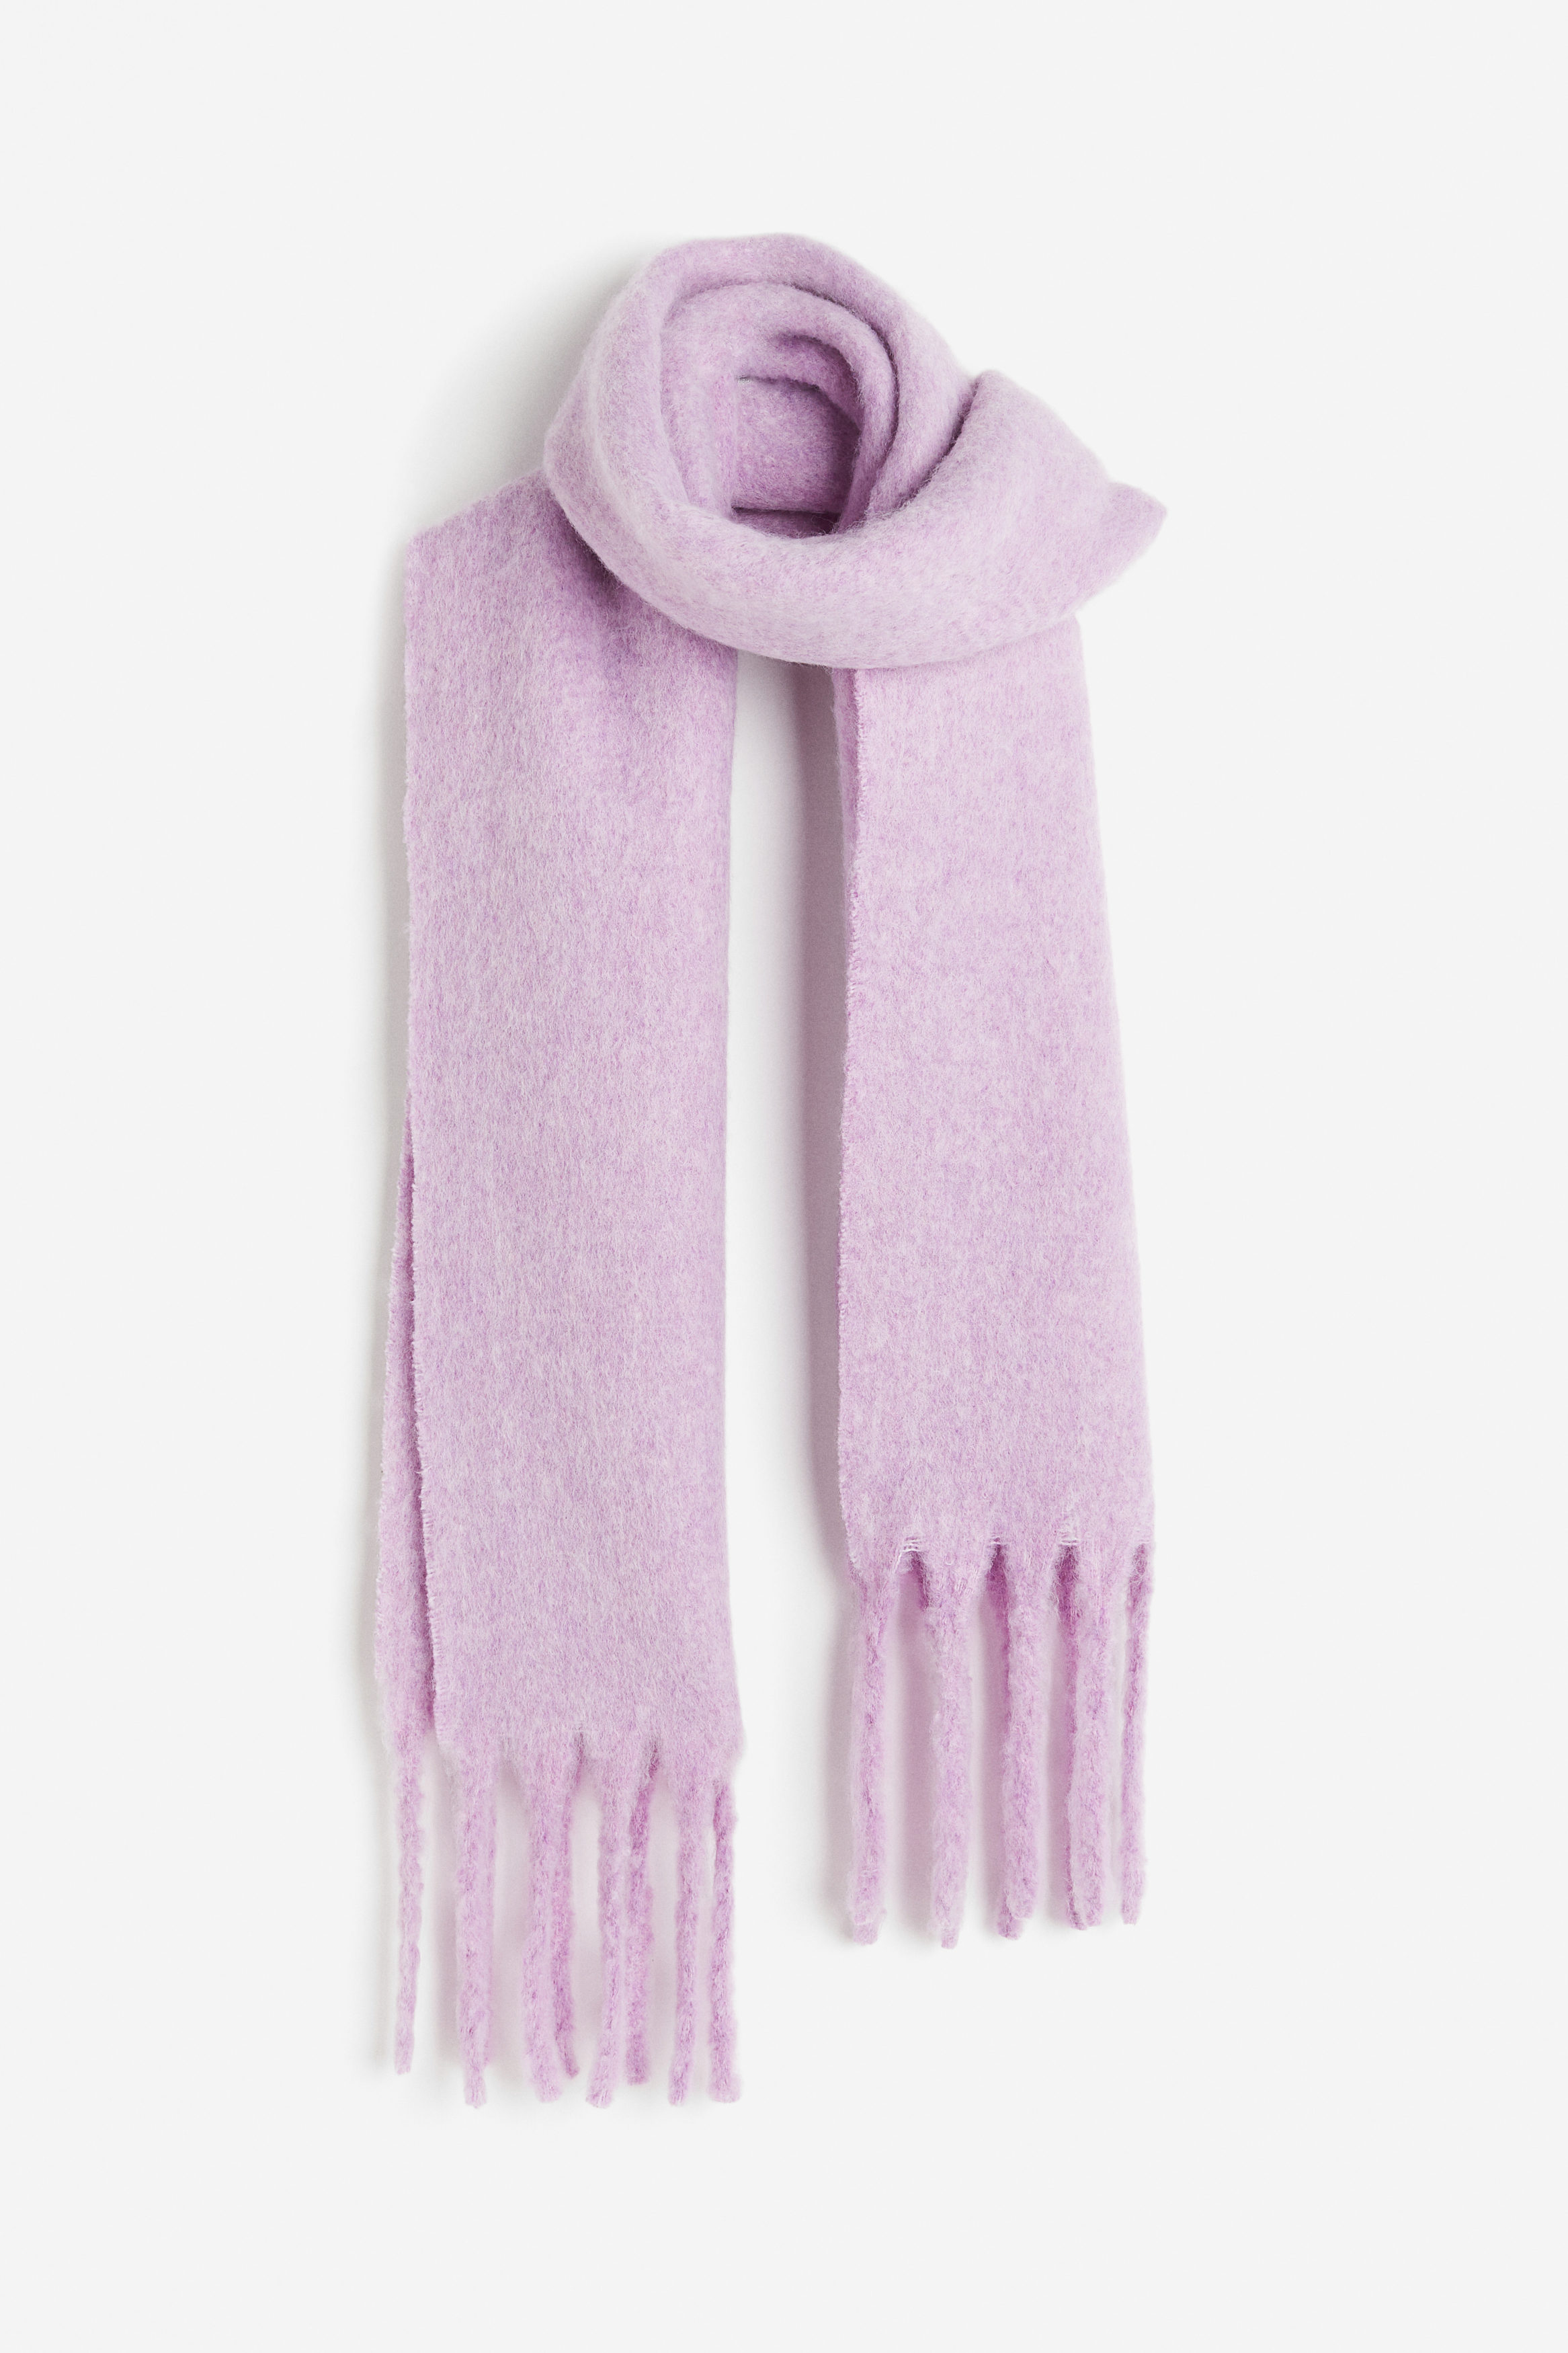 Billede af H&M Halstørklæde Lyslilla, Halstørklæder. Farve: Light purple I størrelse 190x30 cm